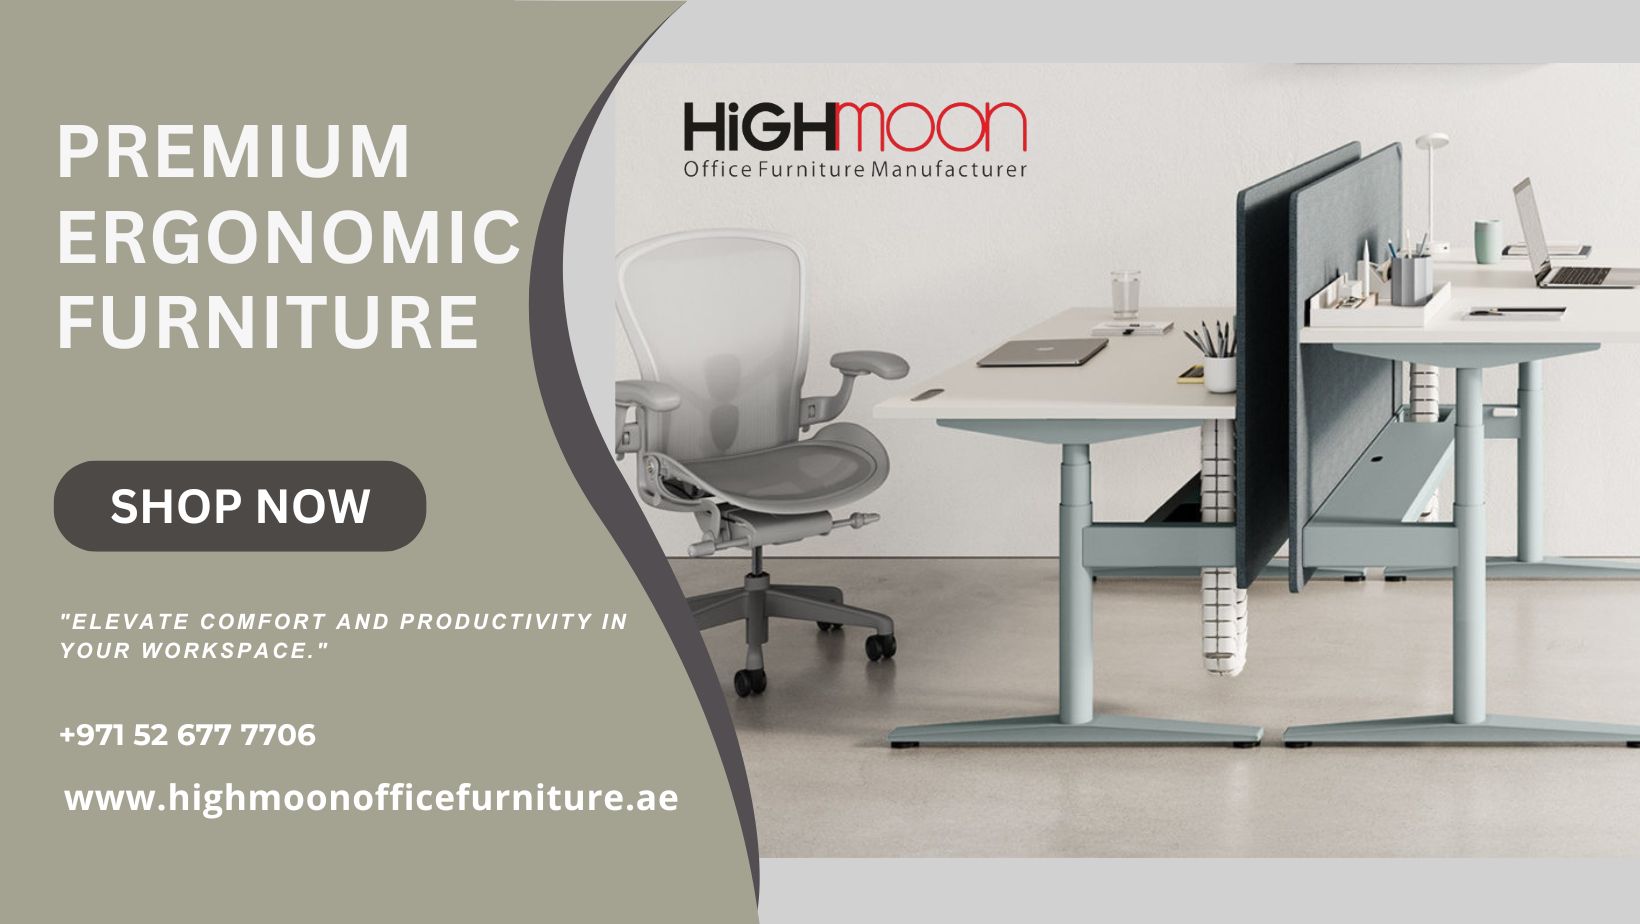 Ergonomic office furniture solutions